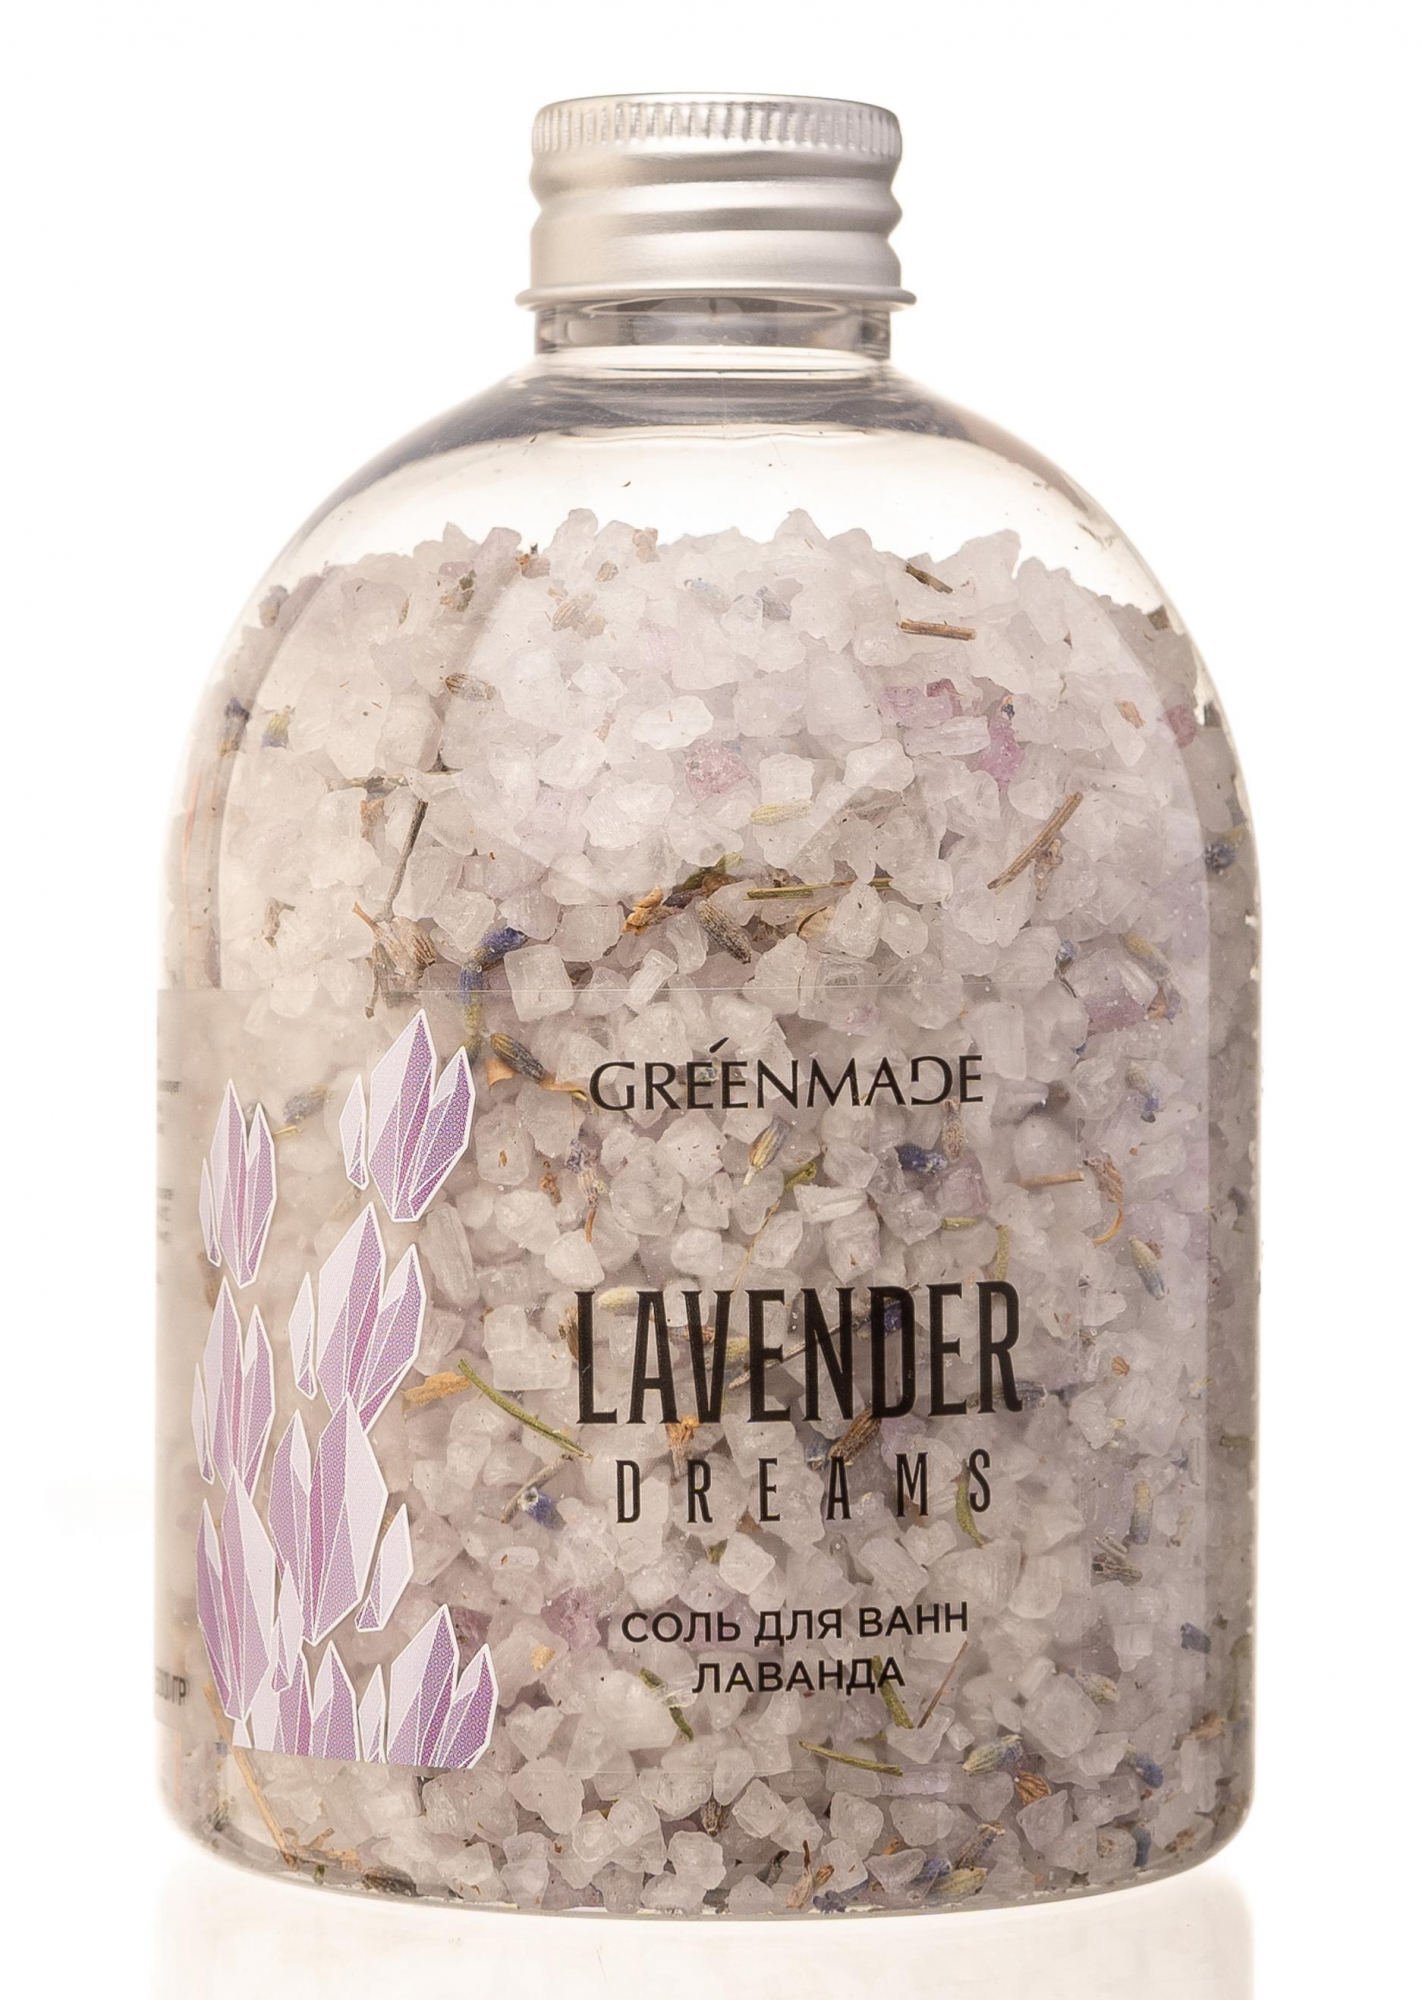 Соль для ванны Лаванда Lavender dreams,500г купить в онлайн экомаркете